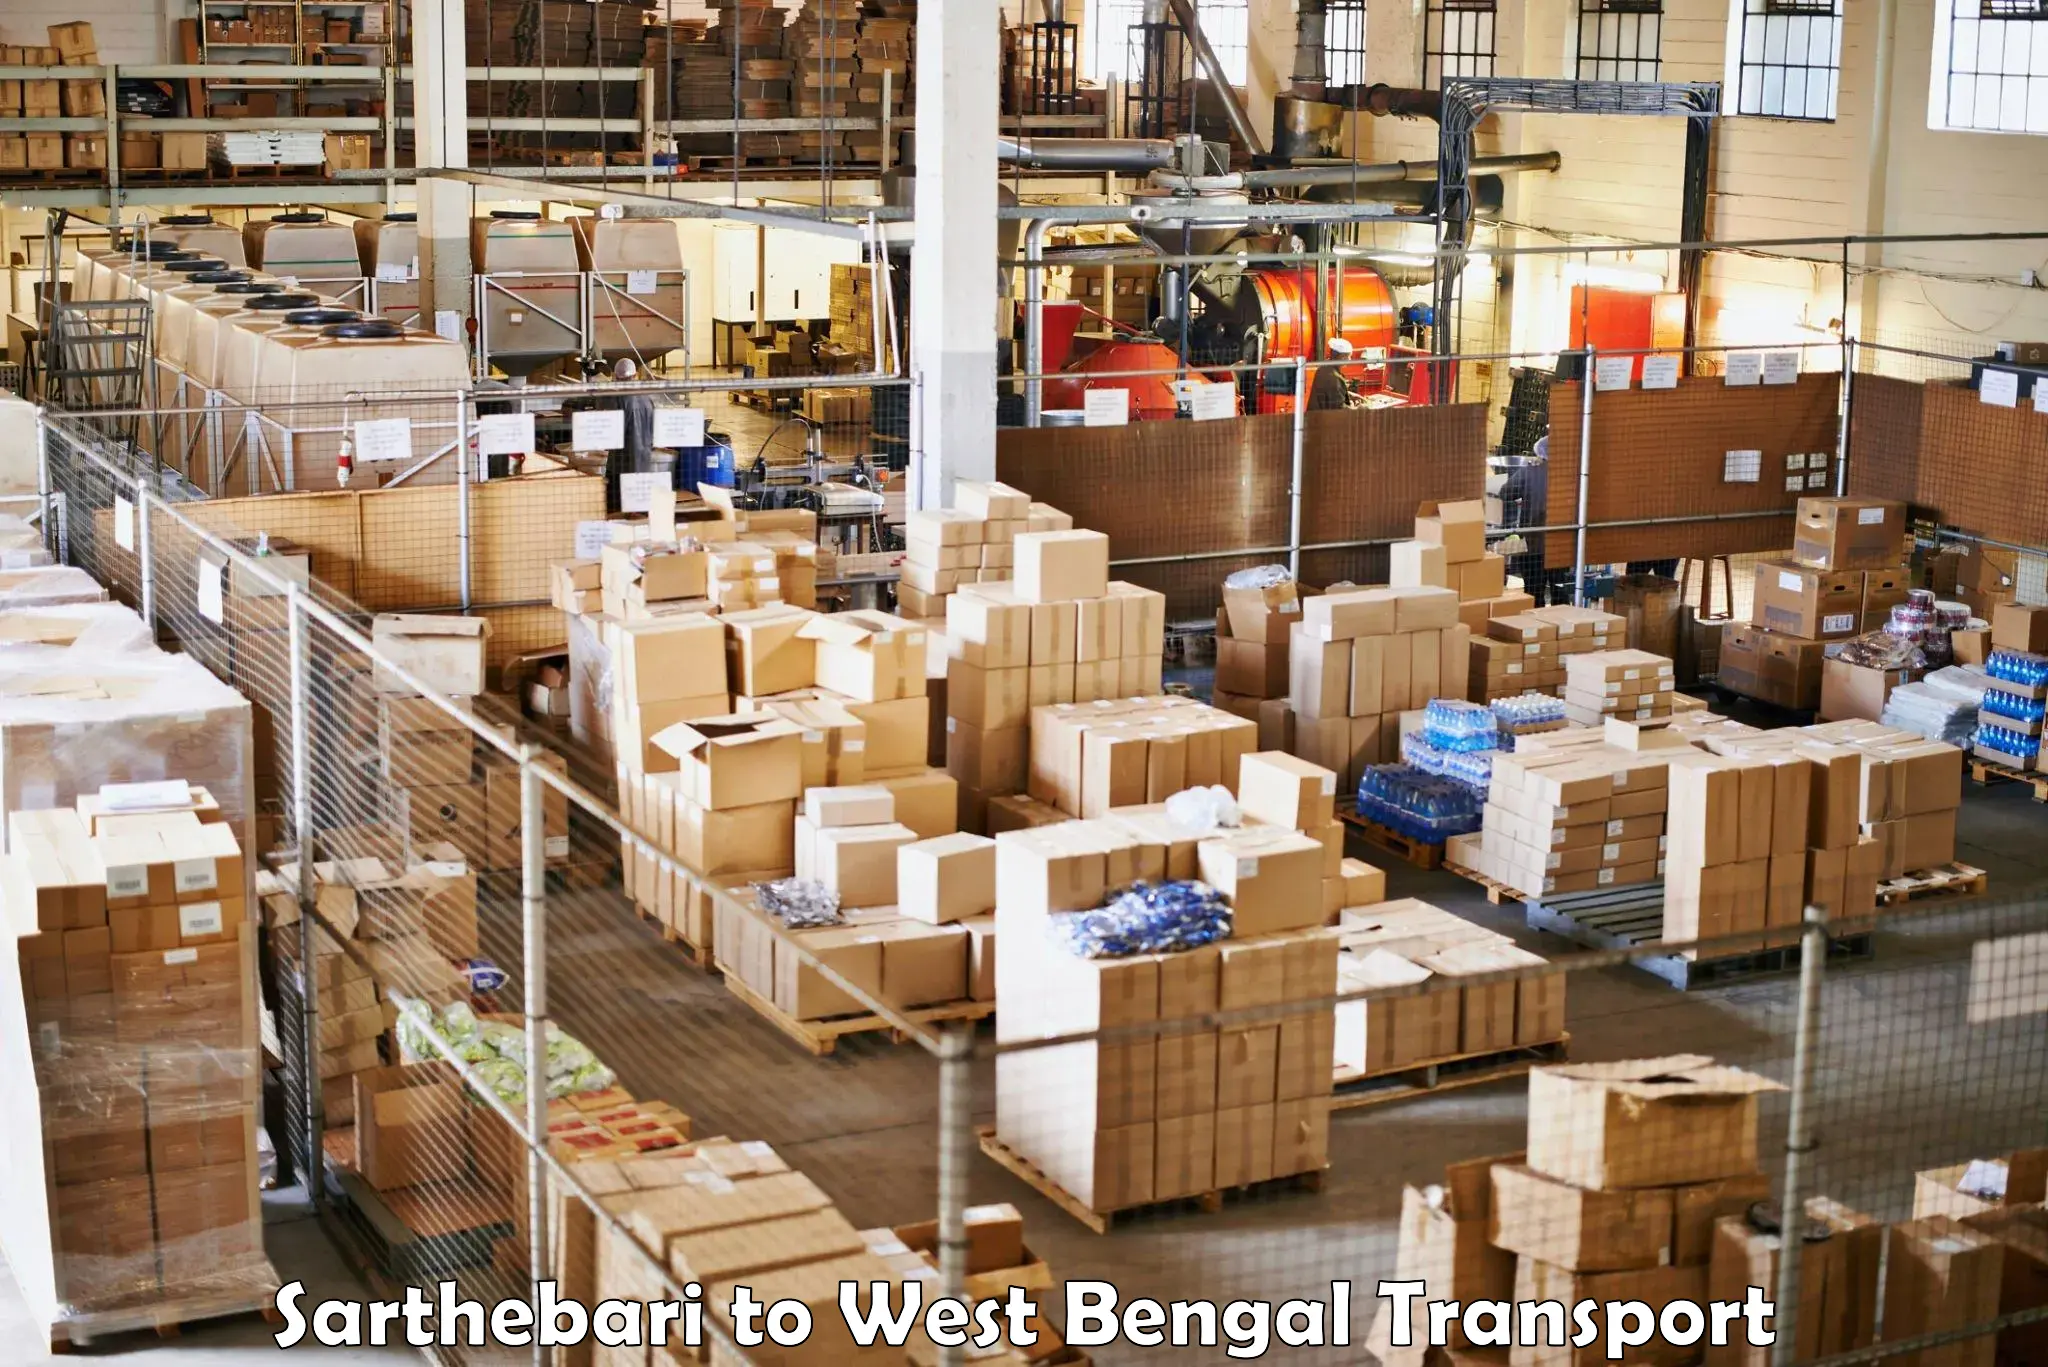 Daily transport service Sarthebari to West Bengal